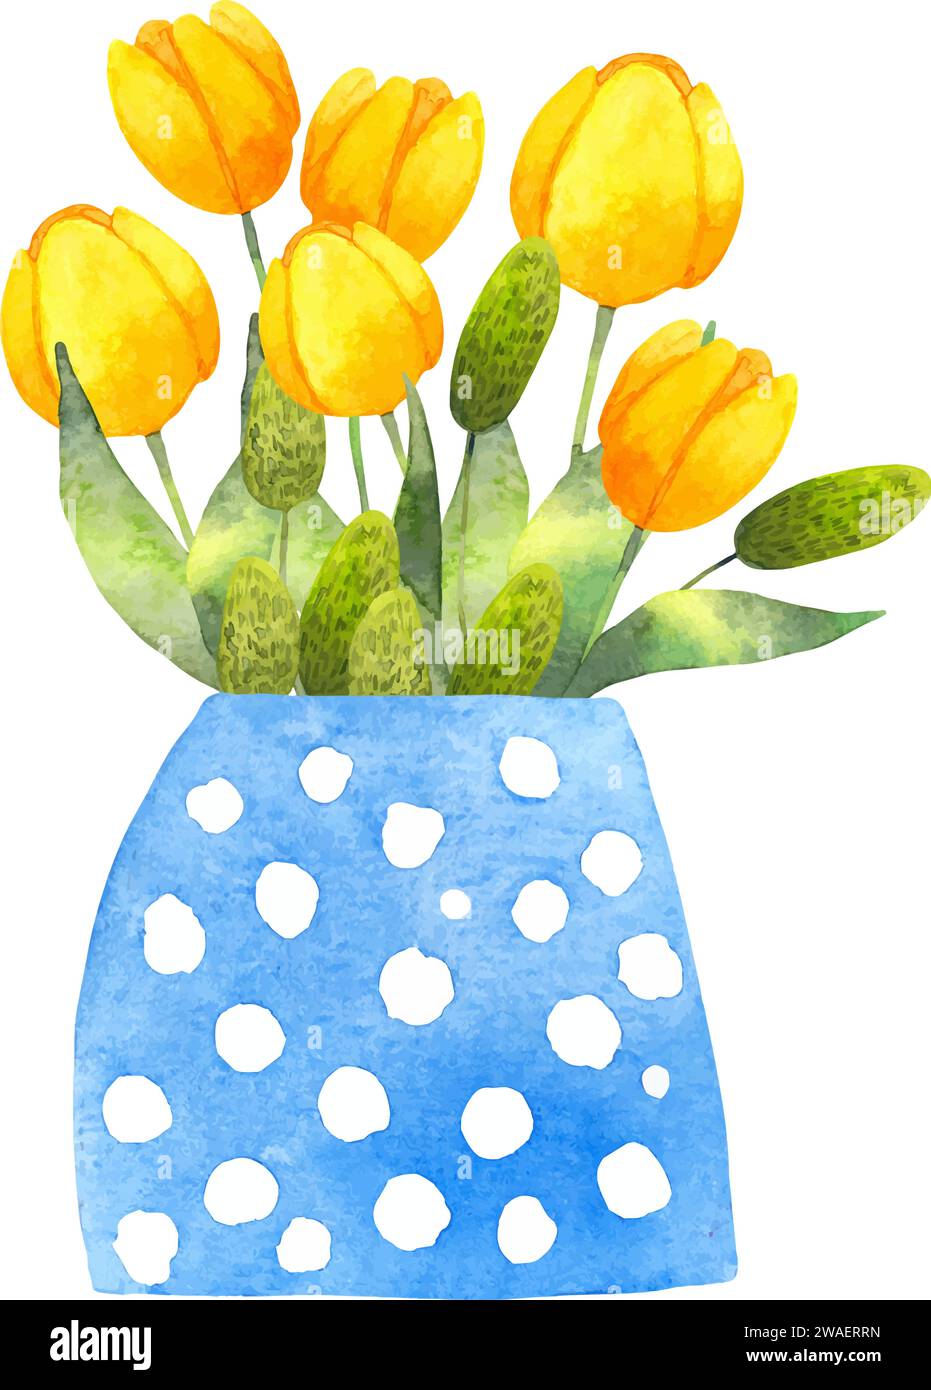 Composition de tulipes jaunes dans un vase.vase bleu avec des fleurs et des feuilles vertes.Illustration aquarelle.style stylisé simple.bouquet botanique de printemps Illustration de Vecteur